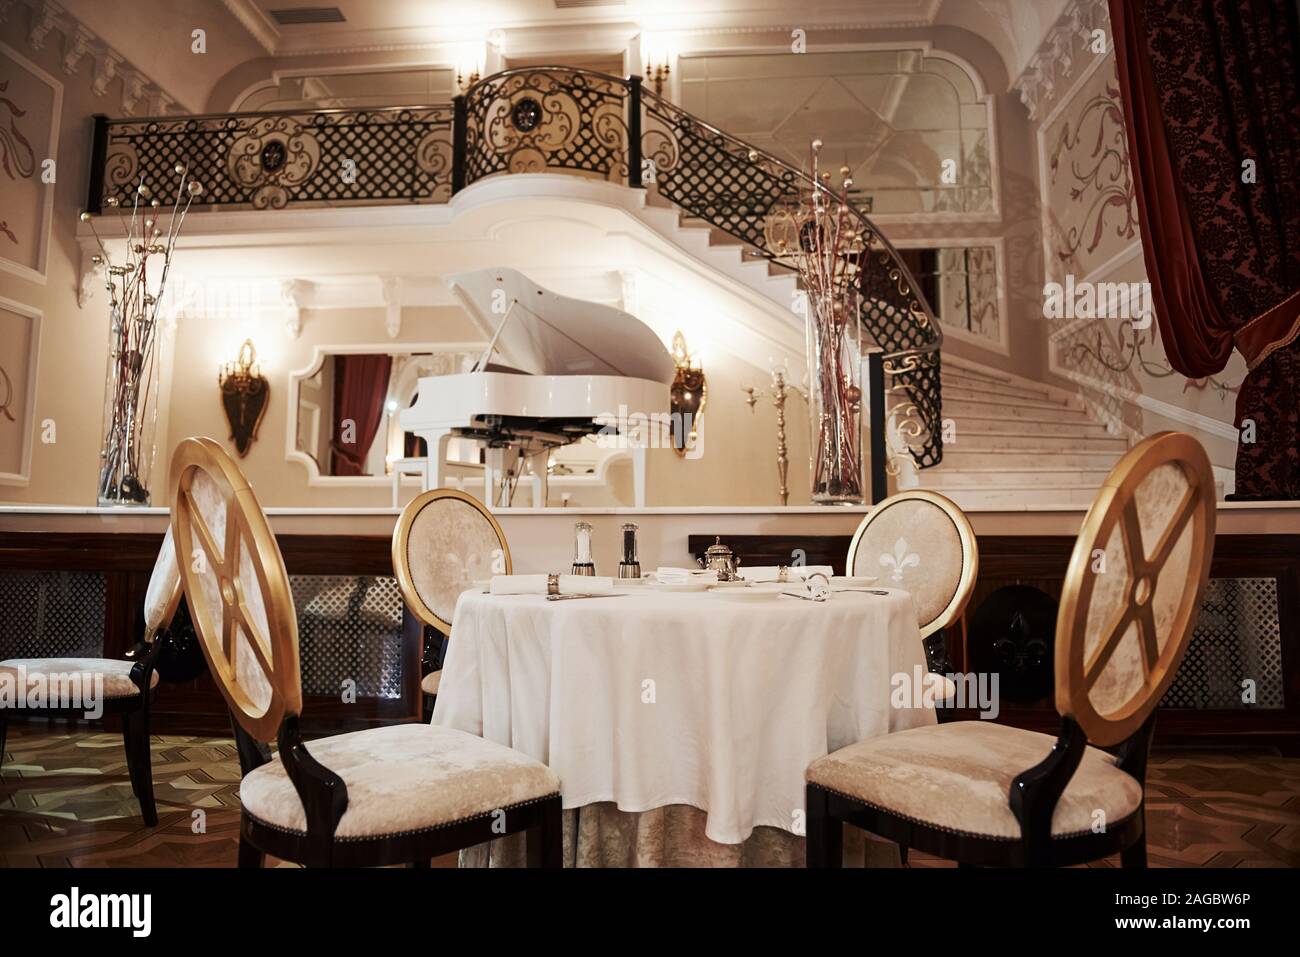 Le tableau pour les quatre personnes est prêt à recevoir des visiteurs.  Intérieur du restaurant de luxe dans vintage style aristocratique avec piano  sur la scène Photo Stock - Alamy